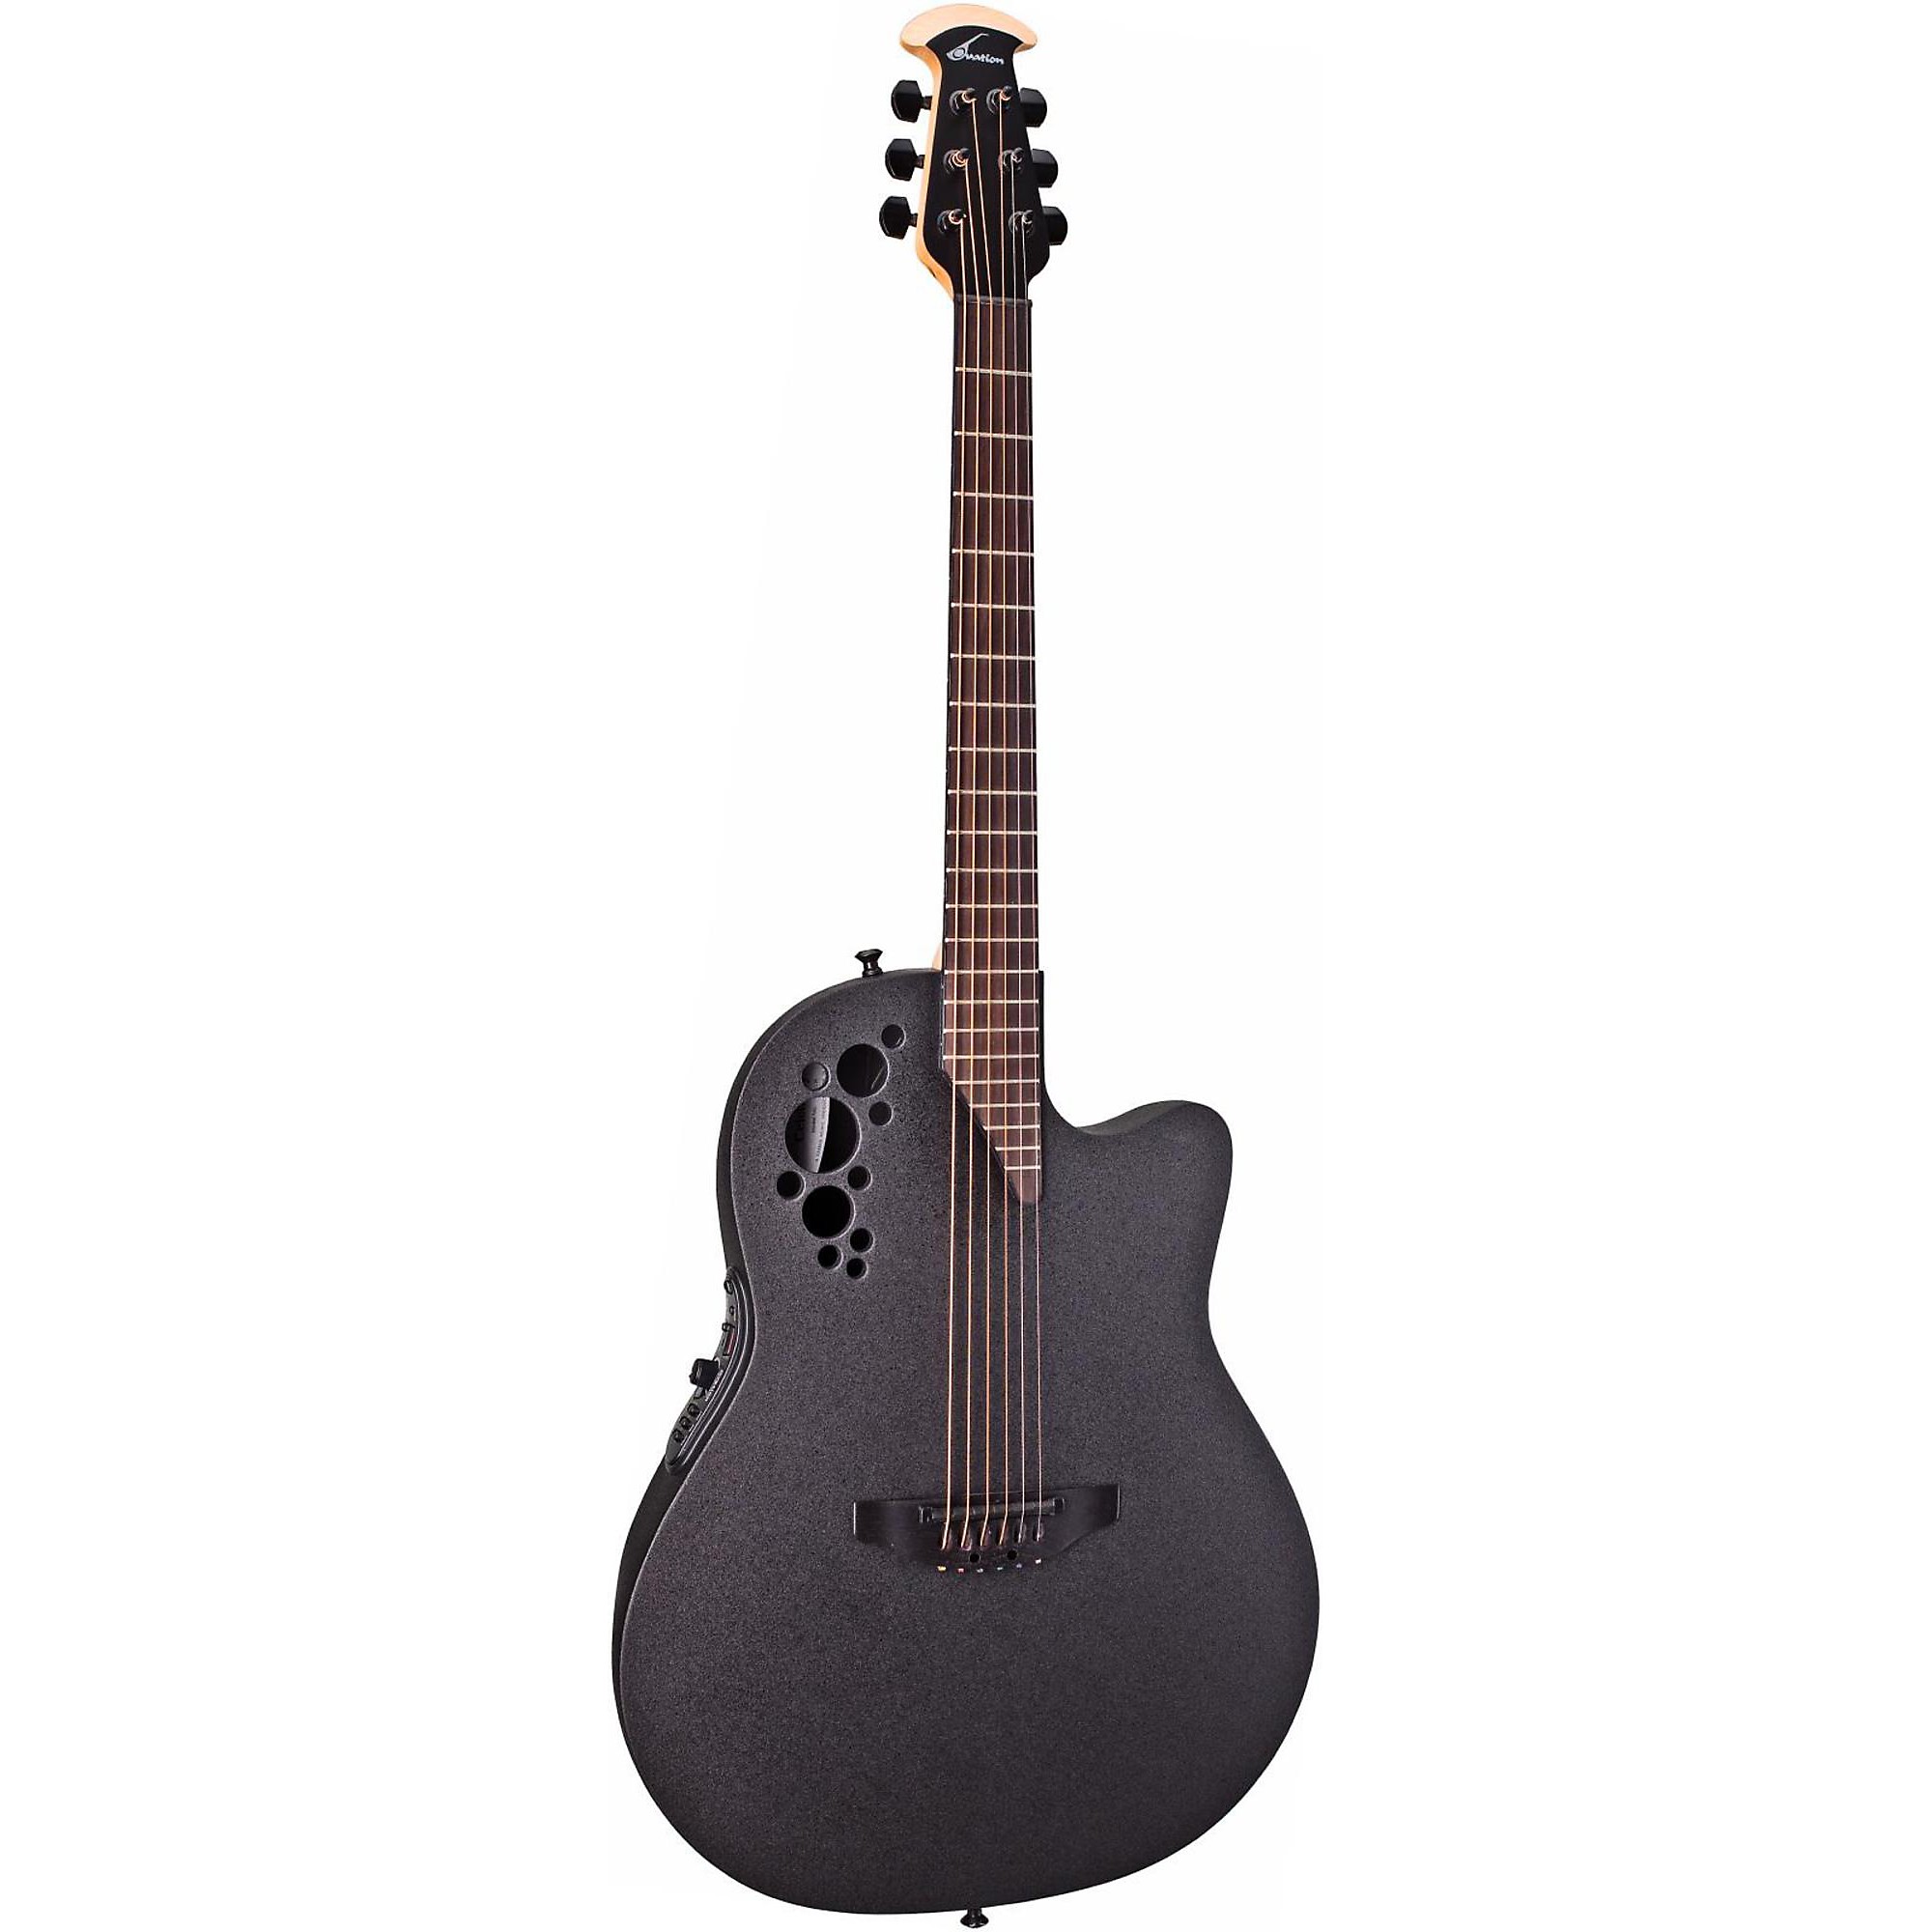 Акустически-электрическая гитара Ovation Elite 1778 TX черная